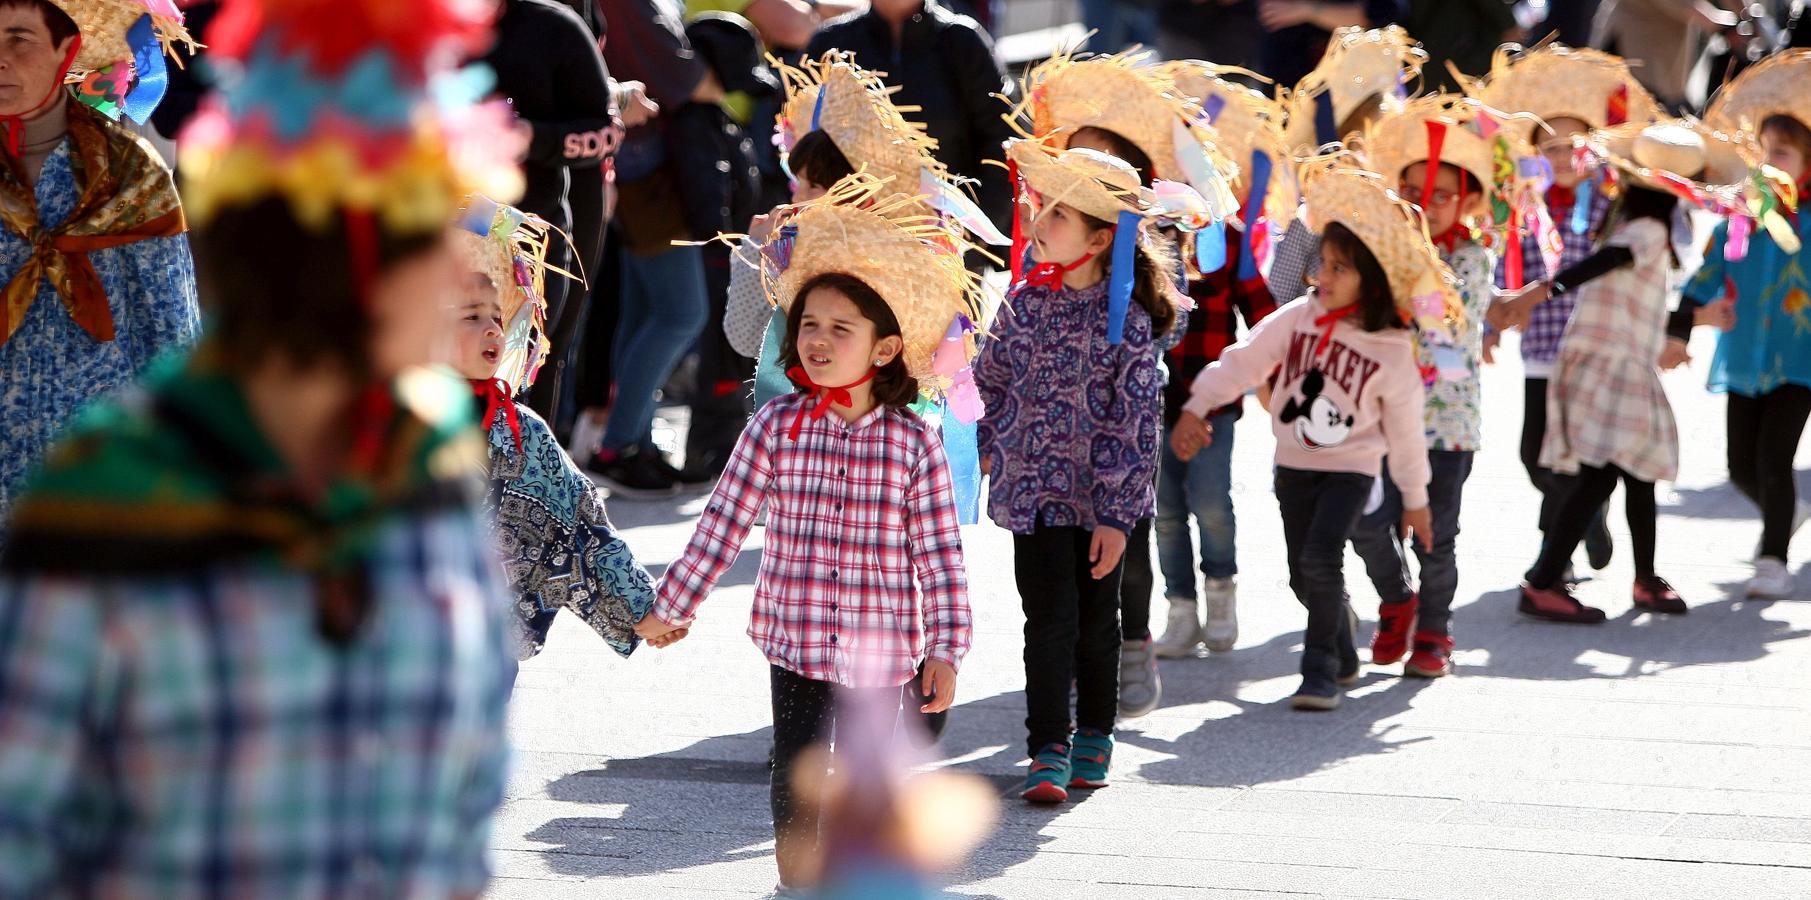 El viernes flaco suele ser el día en el que los centros escolares celebran por las calles el carnaval y el pasado viernes no fue una excepción. 